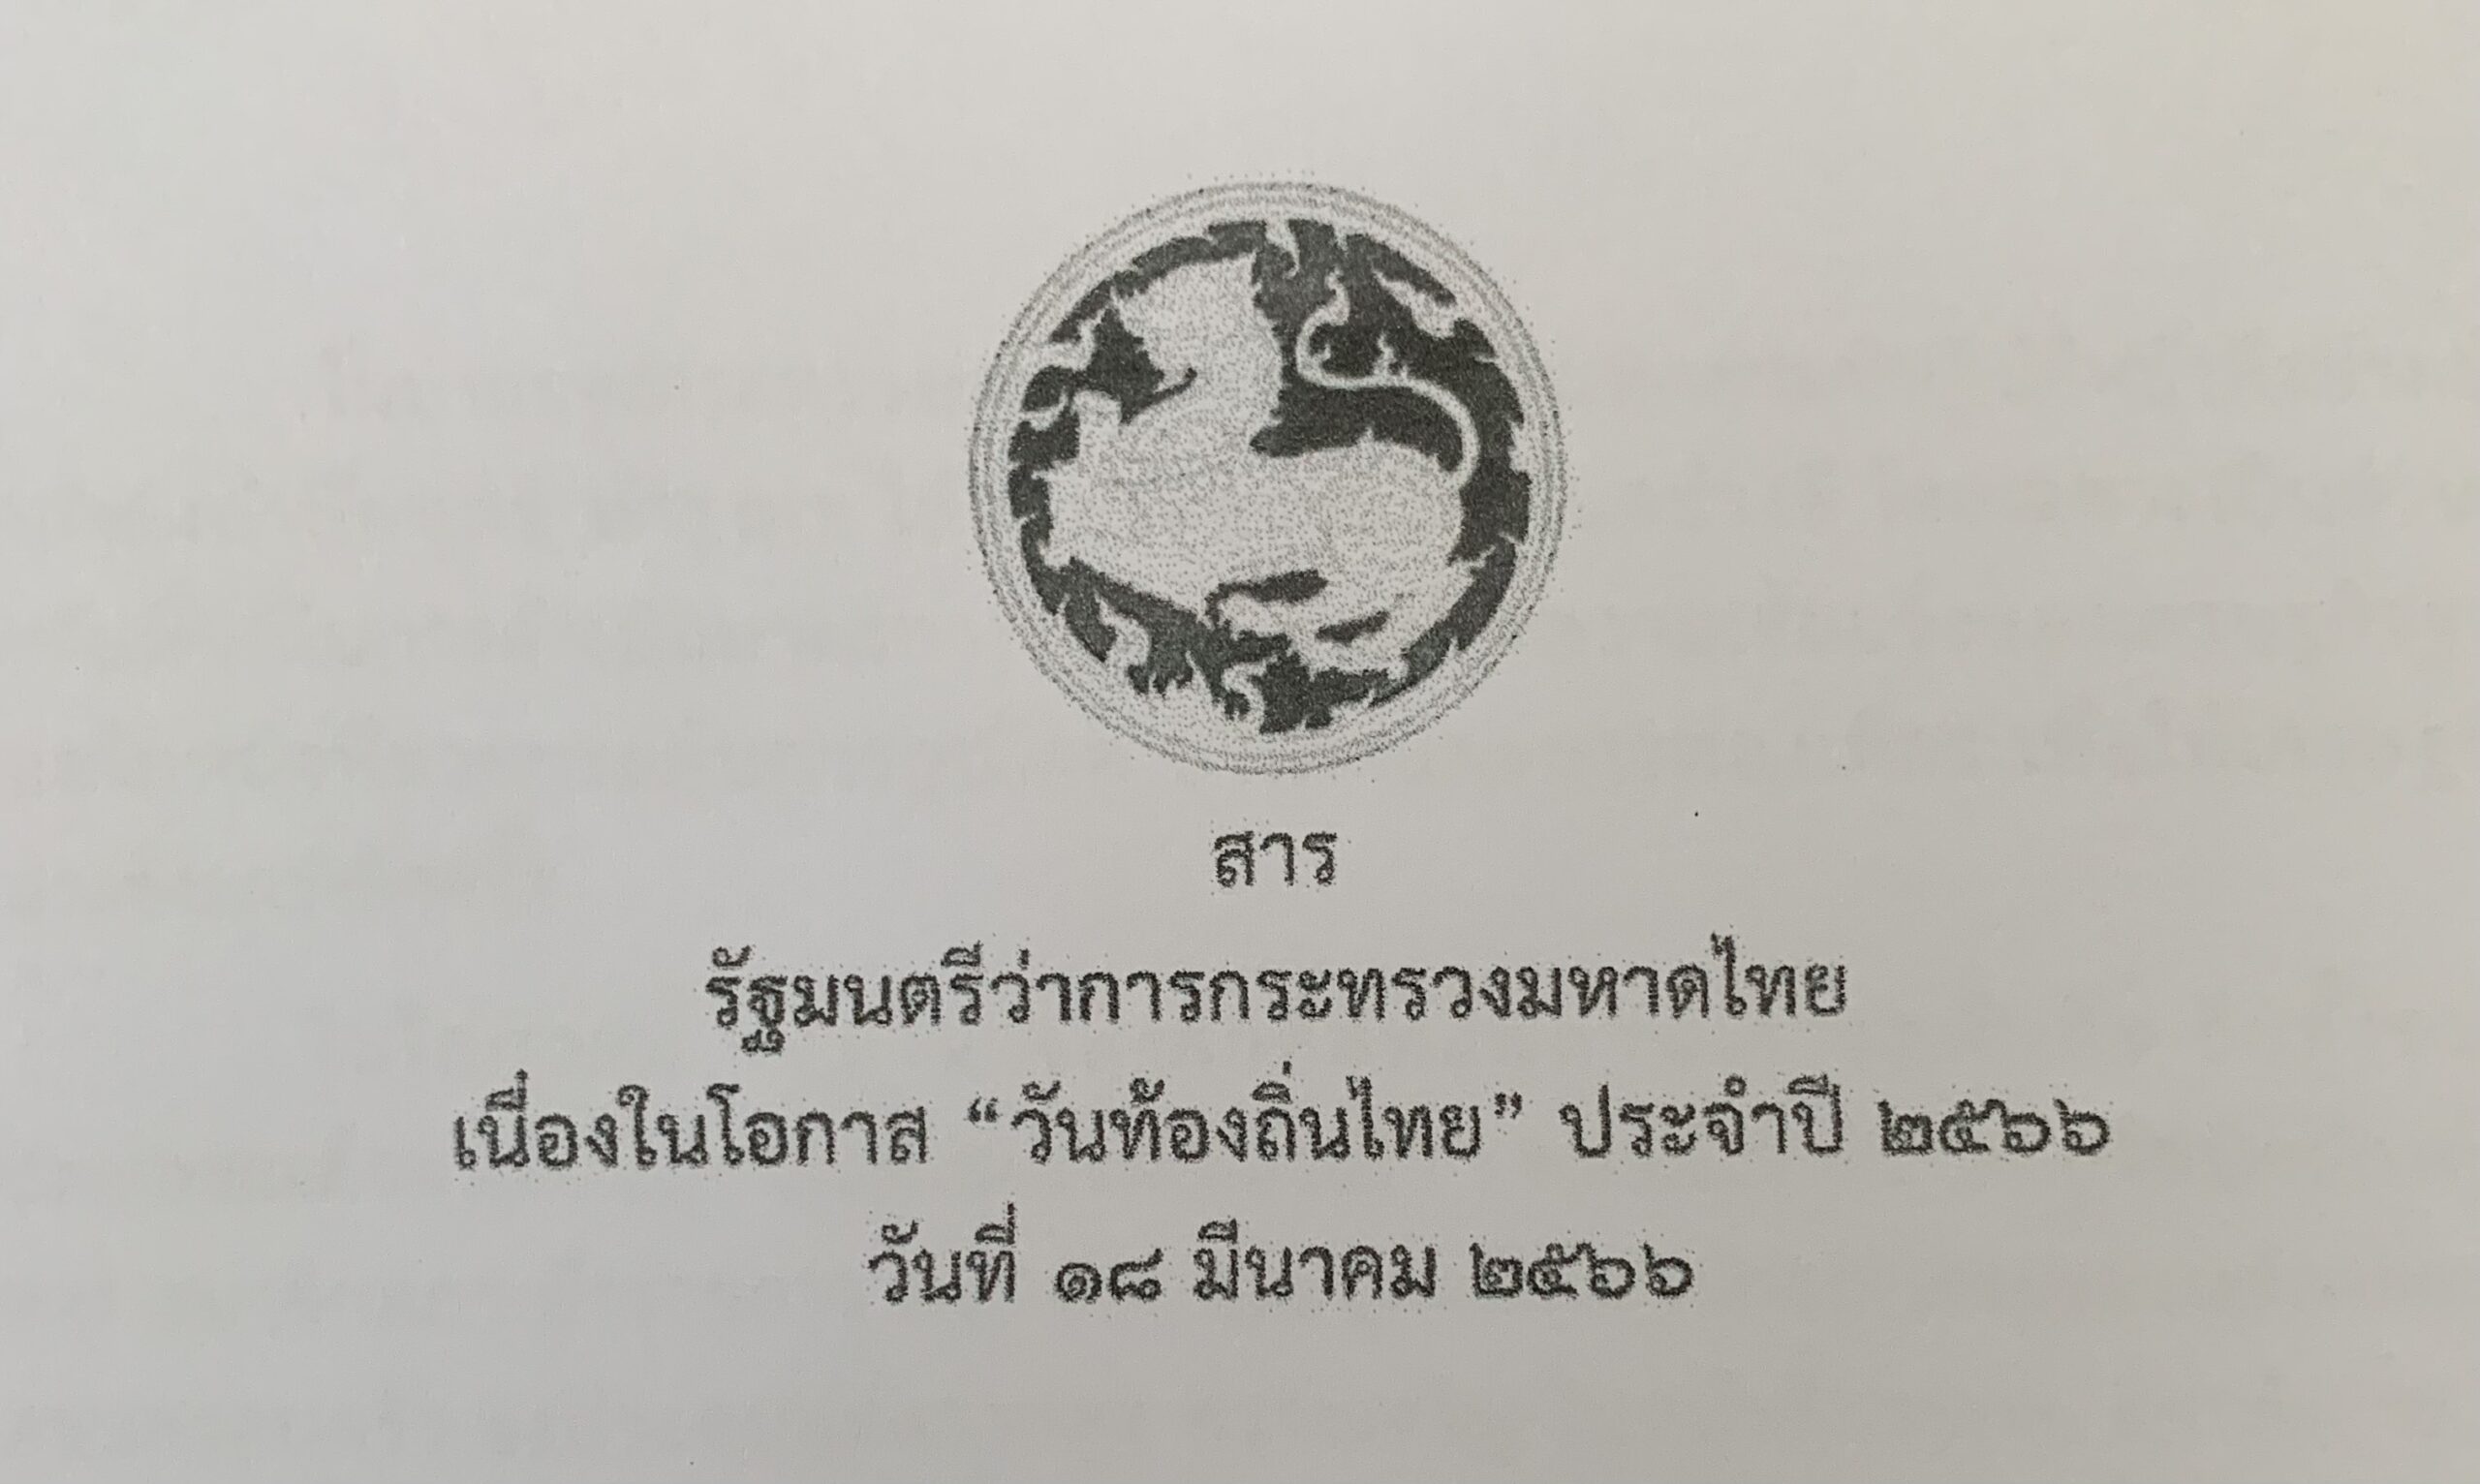 สาร  รัฐมนตรีว่าการกระทรวงมหาดไทย เนื่องในโอกาส “วันท้องถิ่นไทย” ประจำปี 2566 วันเสาร์ที่ 18 มีนาคม 2566